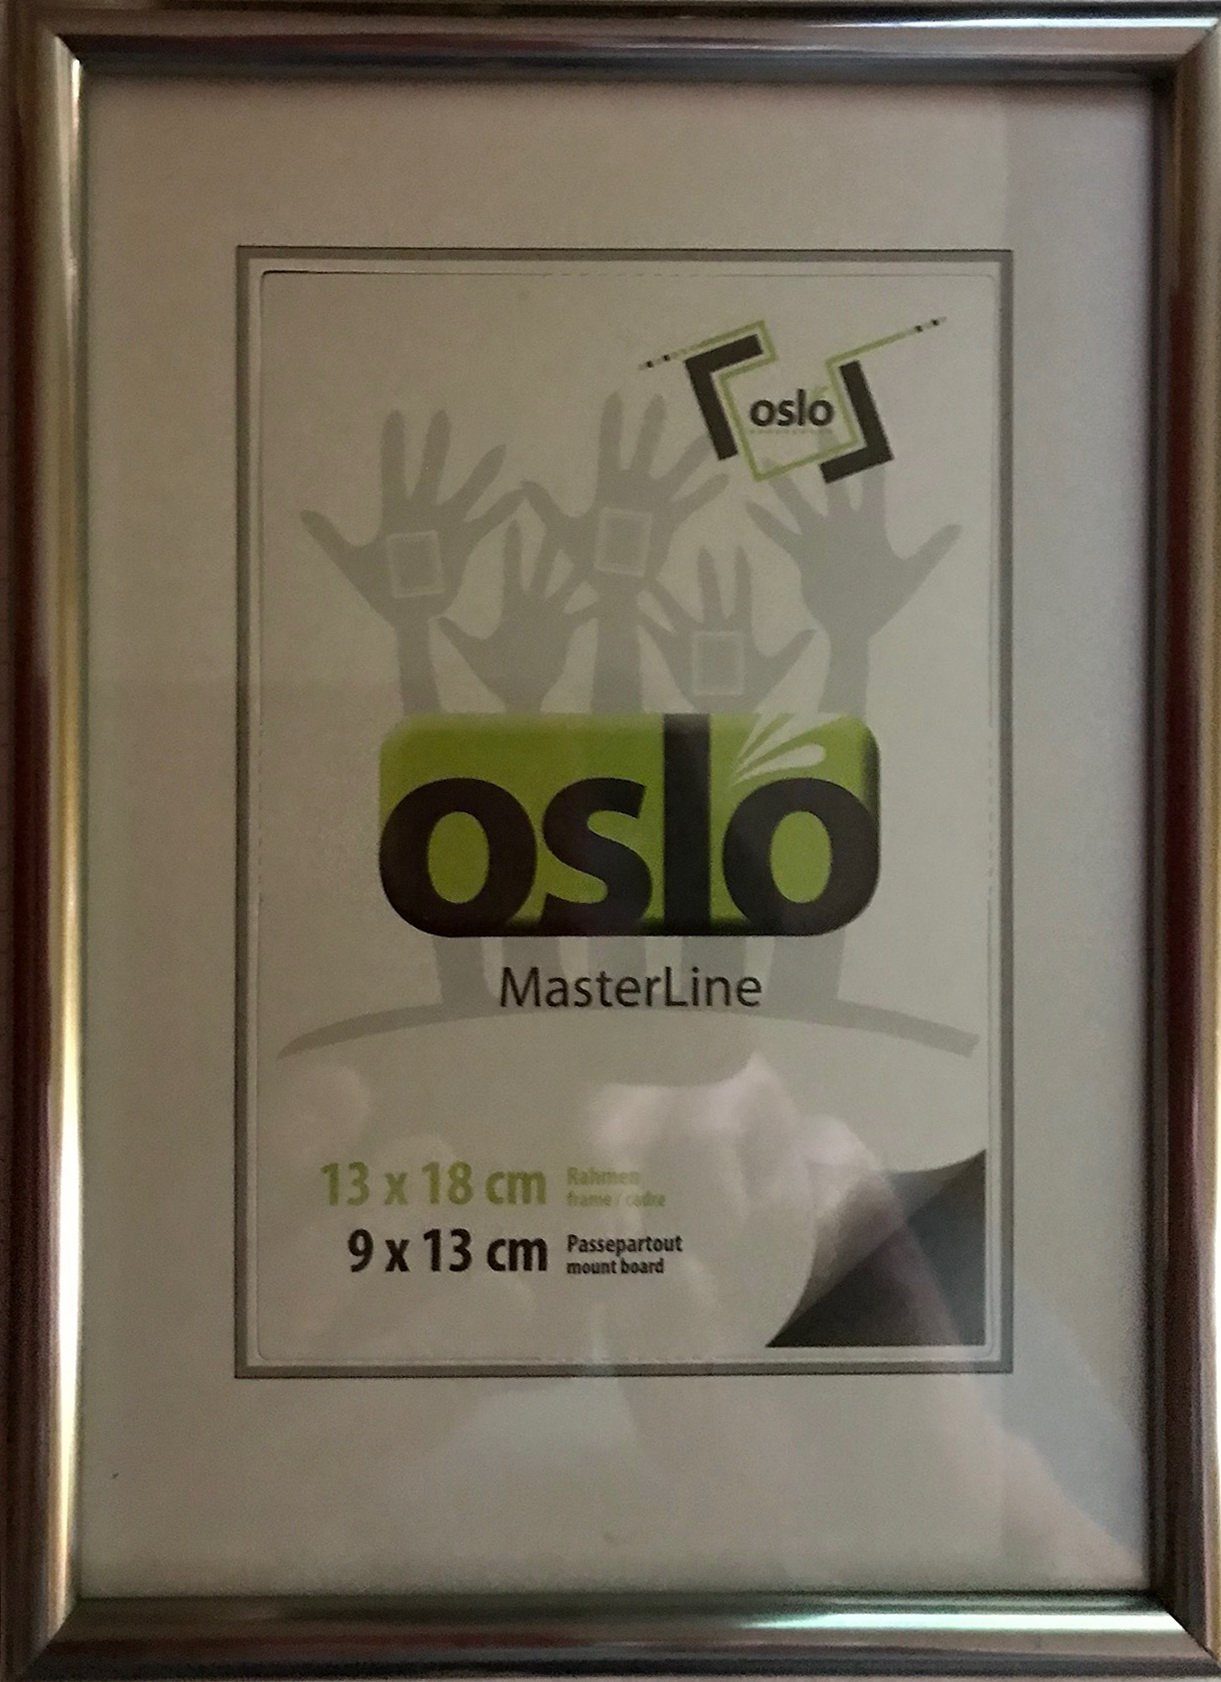 Oslo MasterLine Portraitrahmen Bilderrahmen Kunststoff Becker & Hach Echtglas schmales Profil FSC, {9x13} {10x15} {13x18} {15x20}, FH 13 x 18 cm stahl / dunkelgrau, mit stabilem Aufsteller